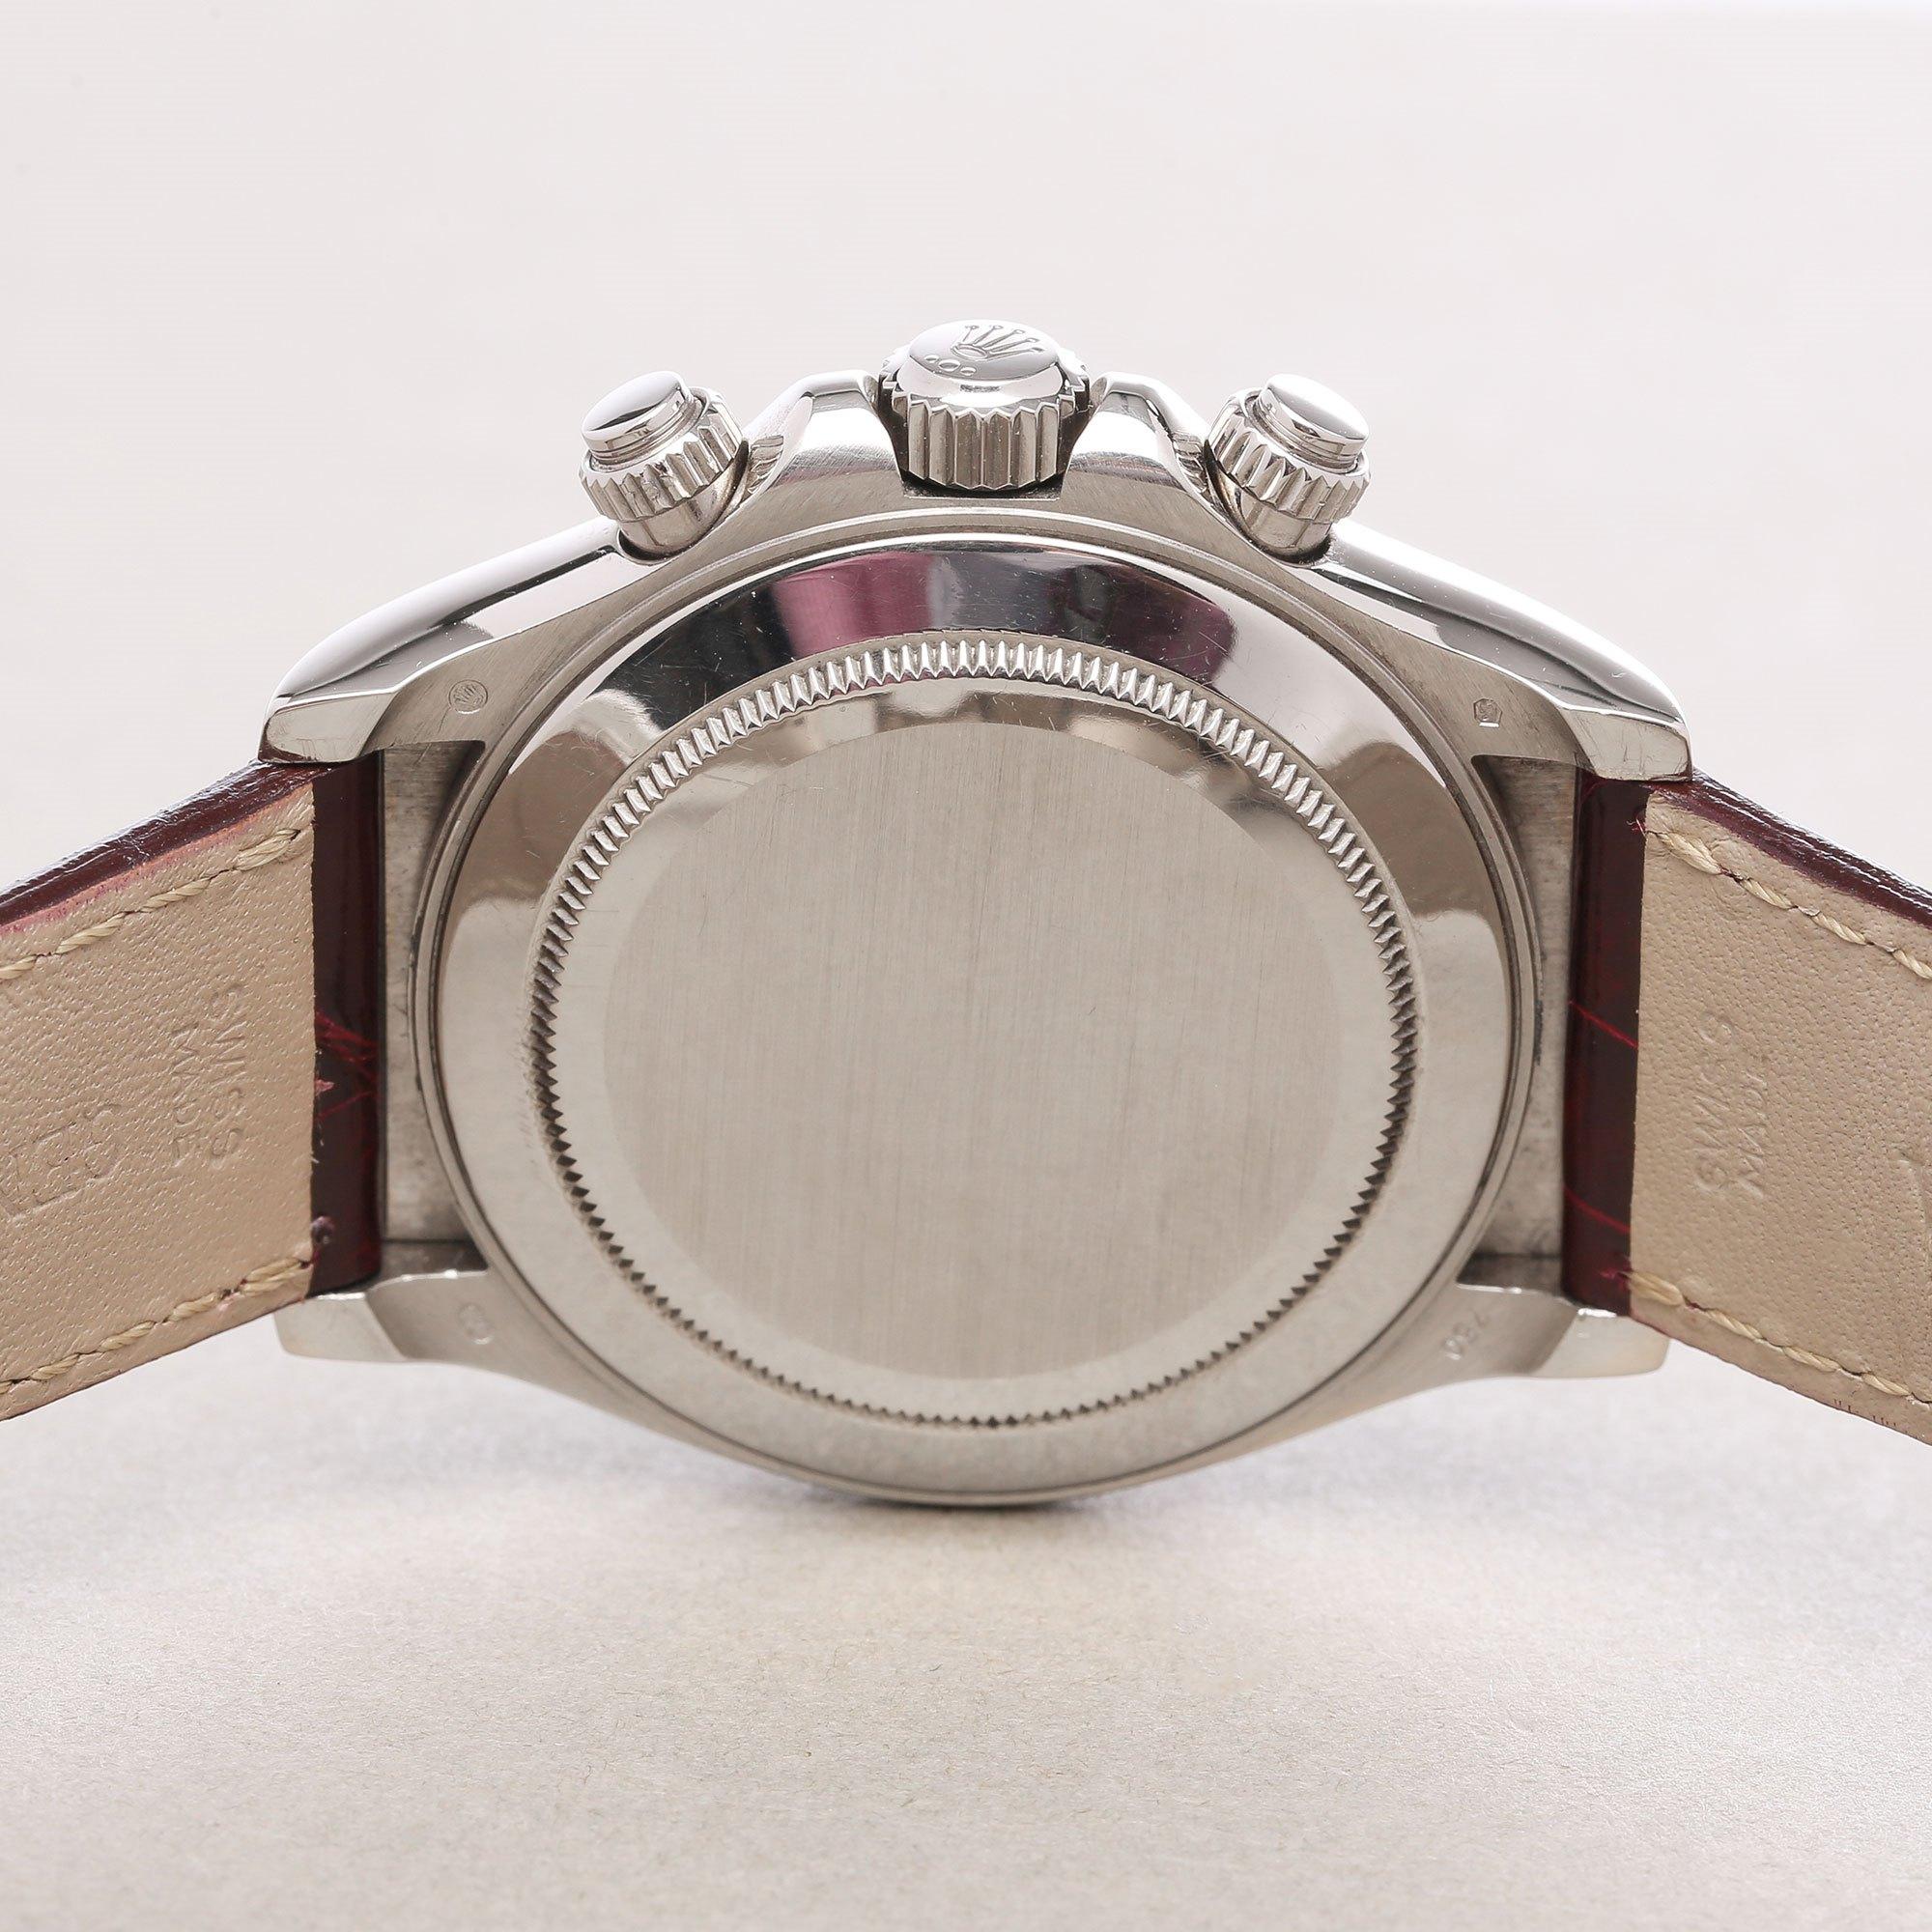 Rolex Daytona 116519 Men's White Gold Grossular Dial Watch 1